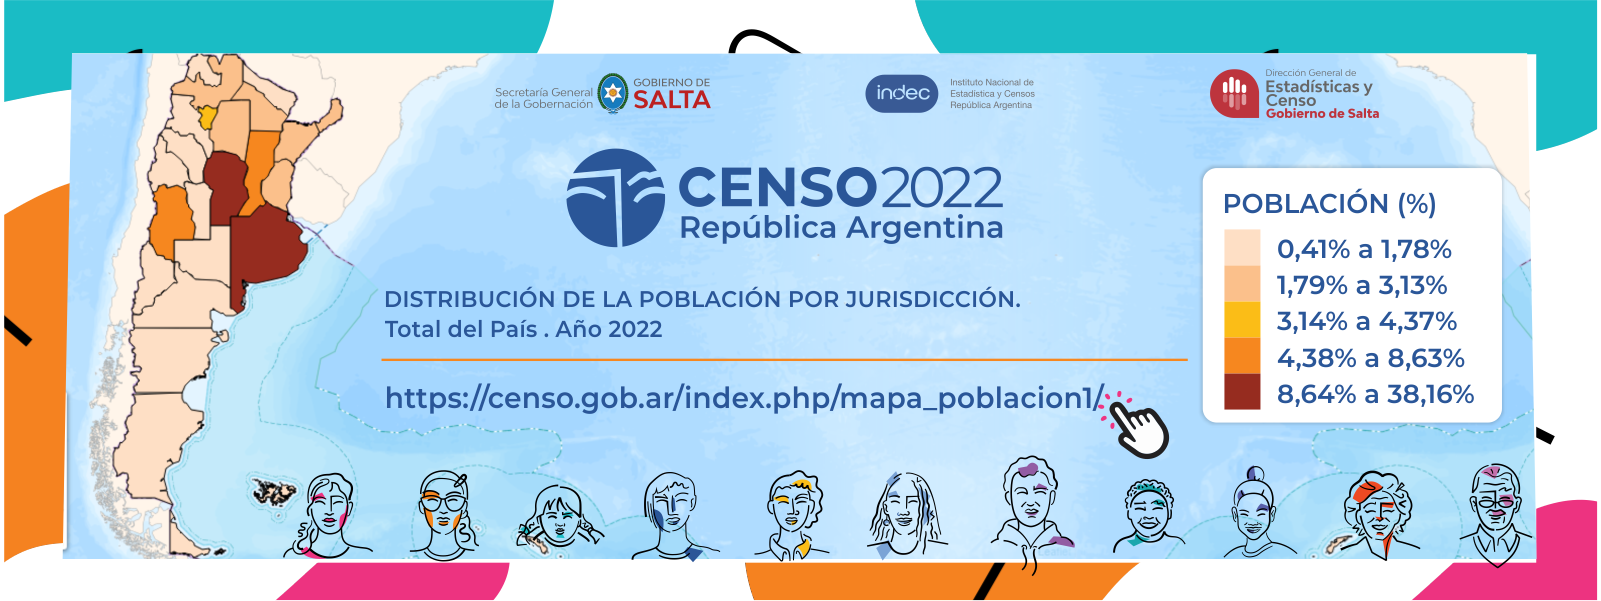 Mapa Censo 2022